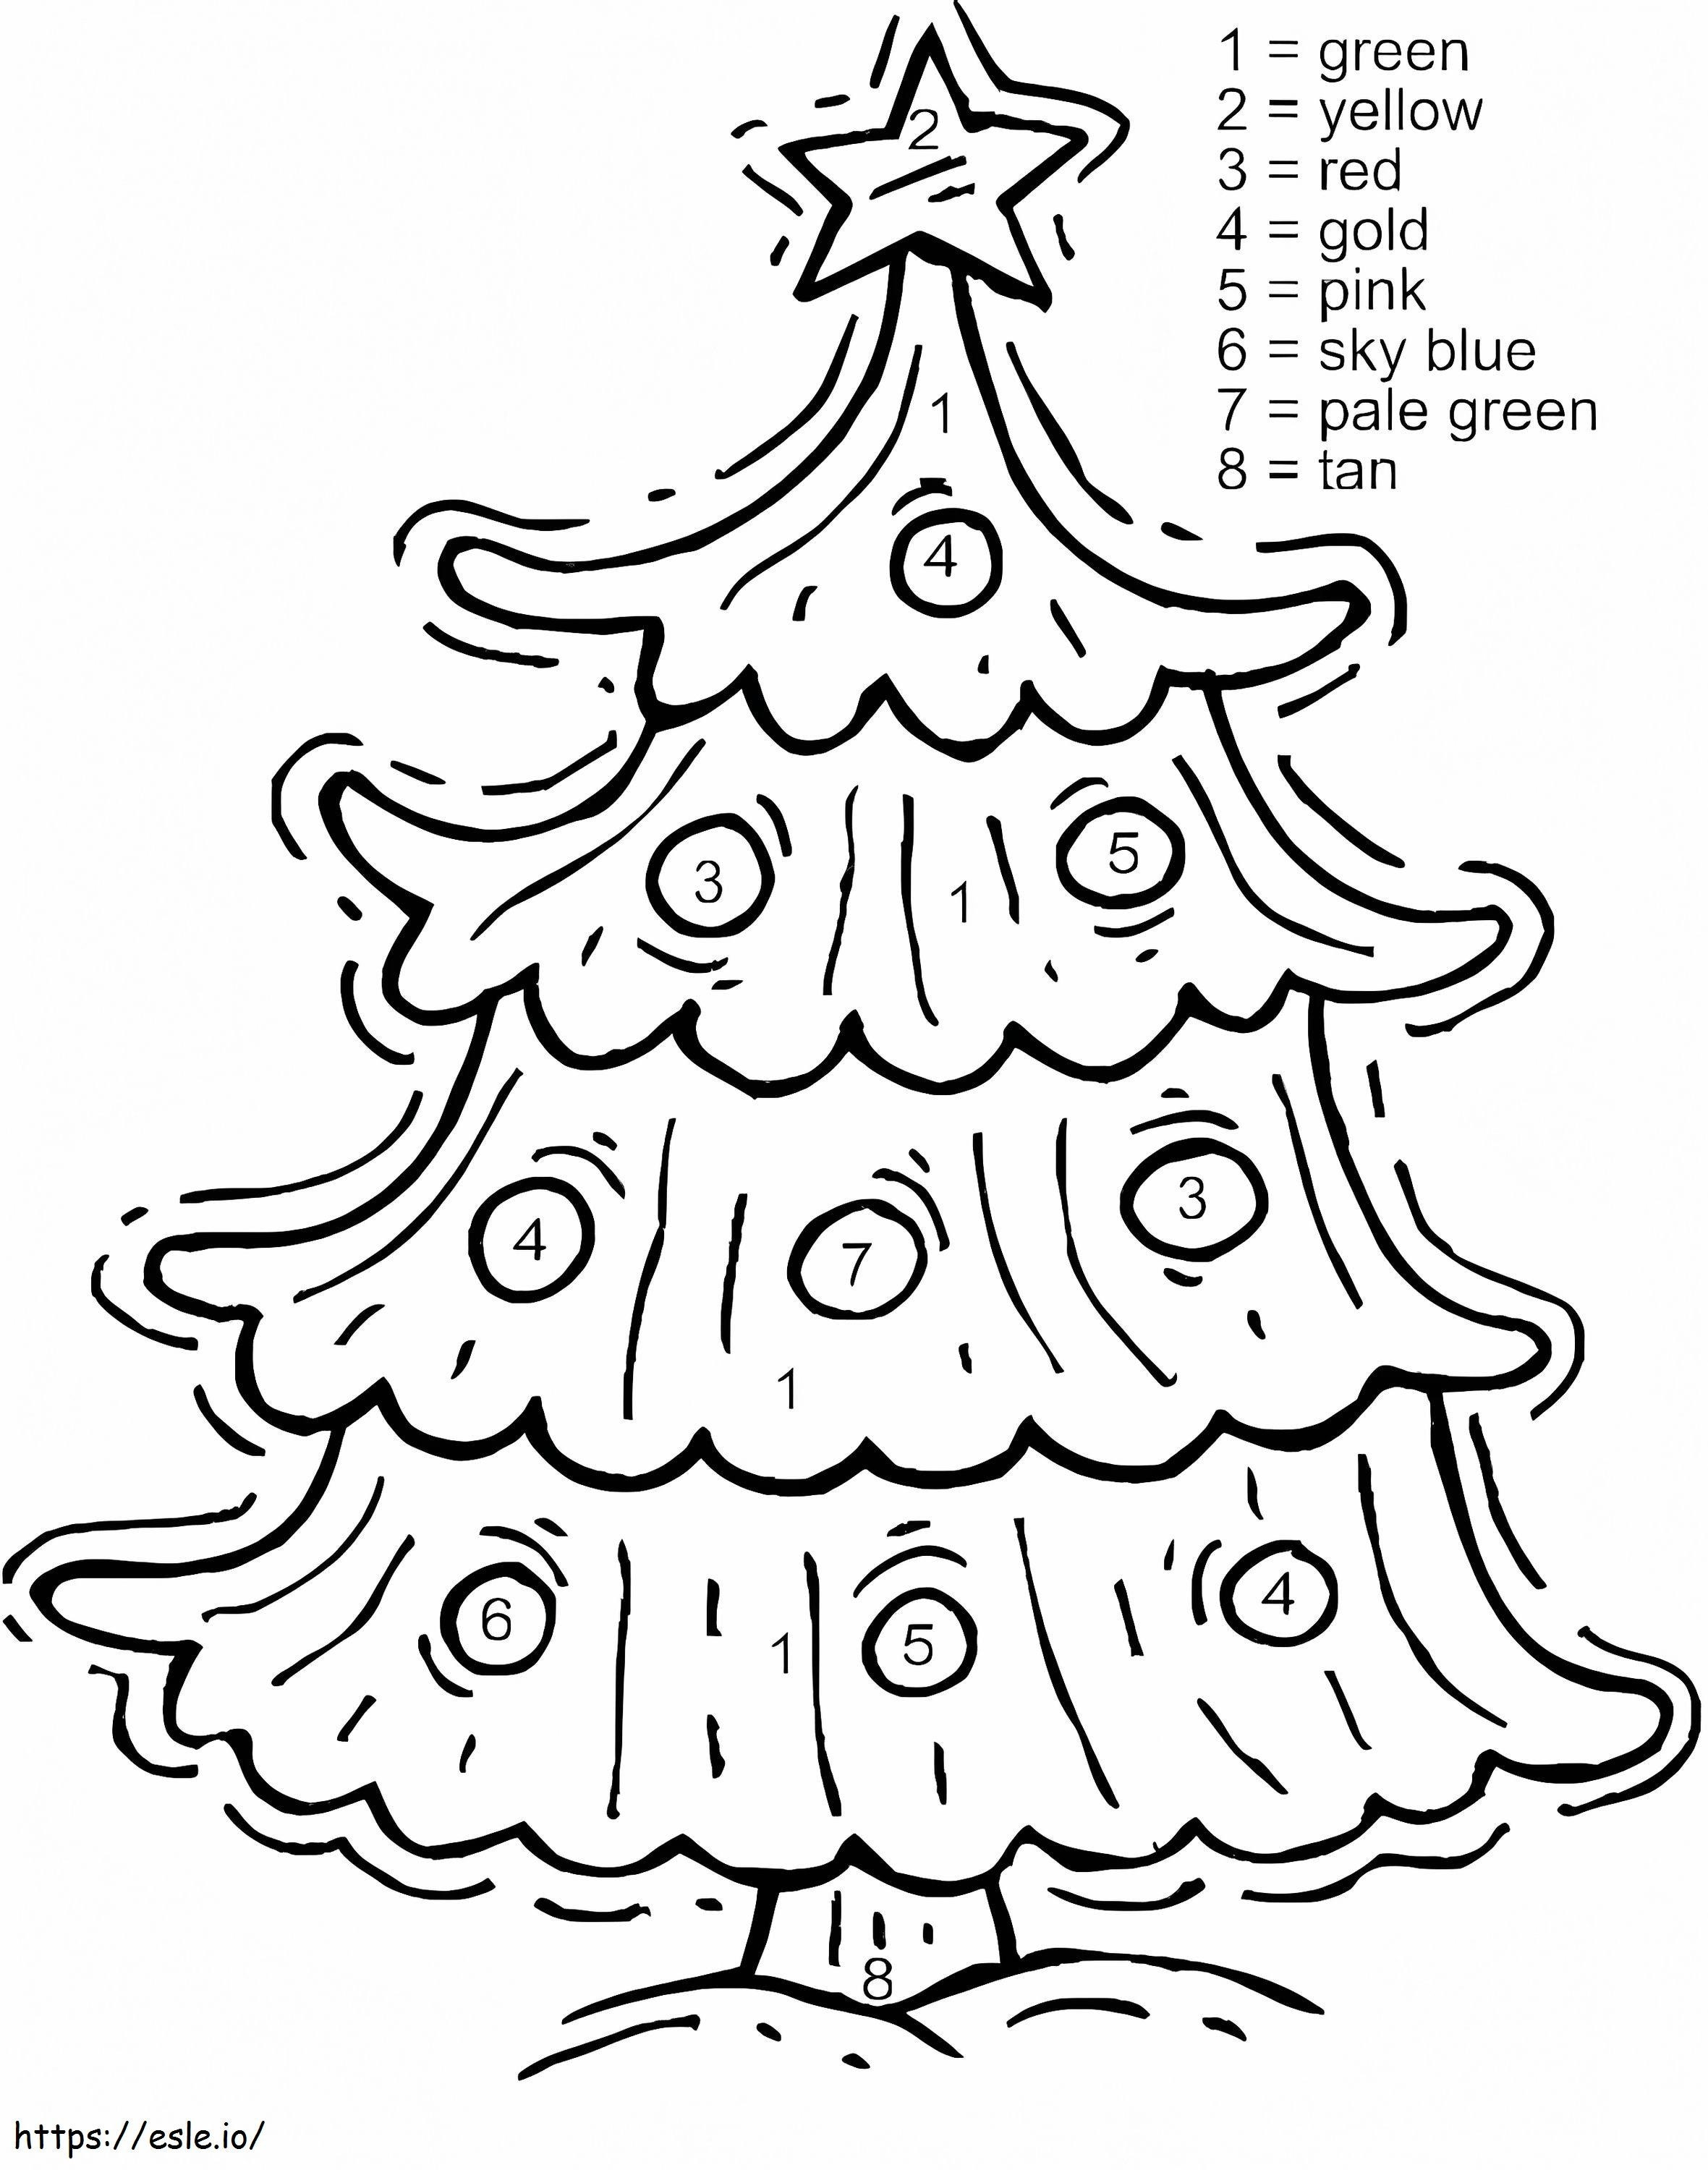 Colorea por números el árbol de Navidad gratis para colorear